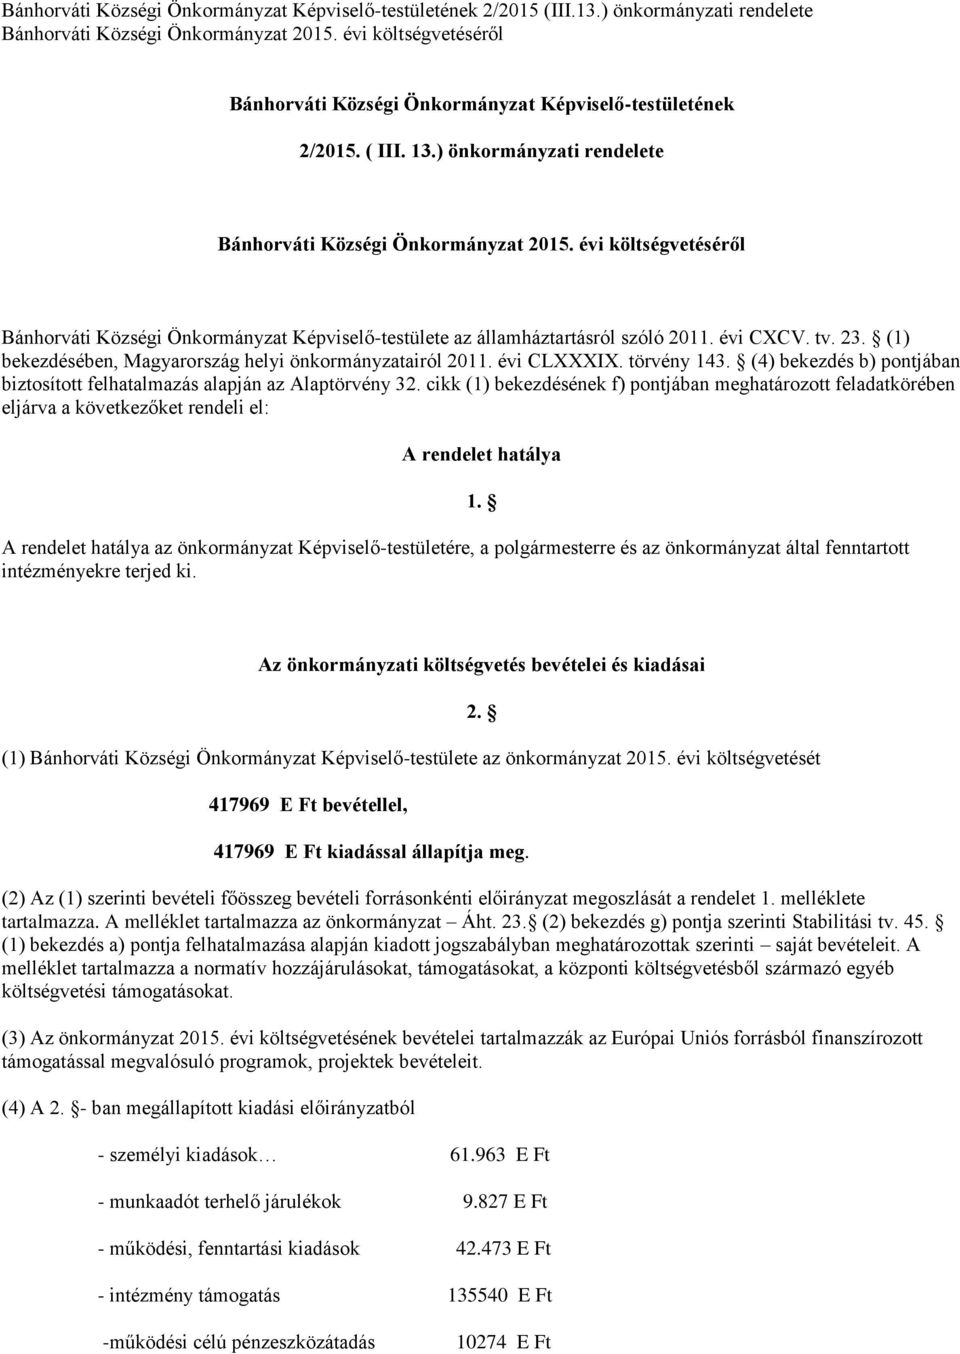 évi költségvetéséről Bánhorváti Községi Önkormányzat Képviselő-testülete az államháztartásról szóló 2011. évi CXCV. tv. 23. (1) bekezdésében, Magyarország helyi önkormányzatairól 2011. évi CLXXXIX.